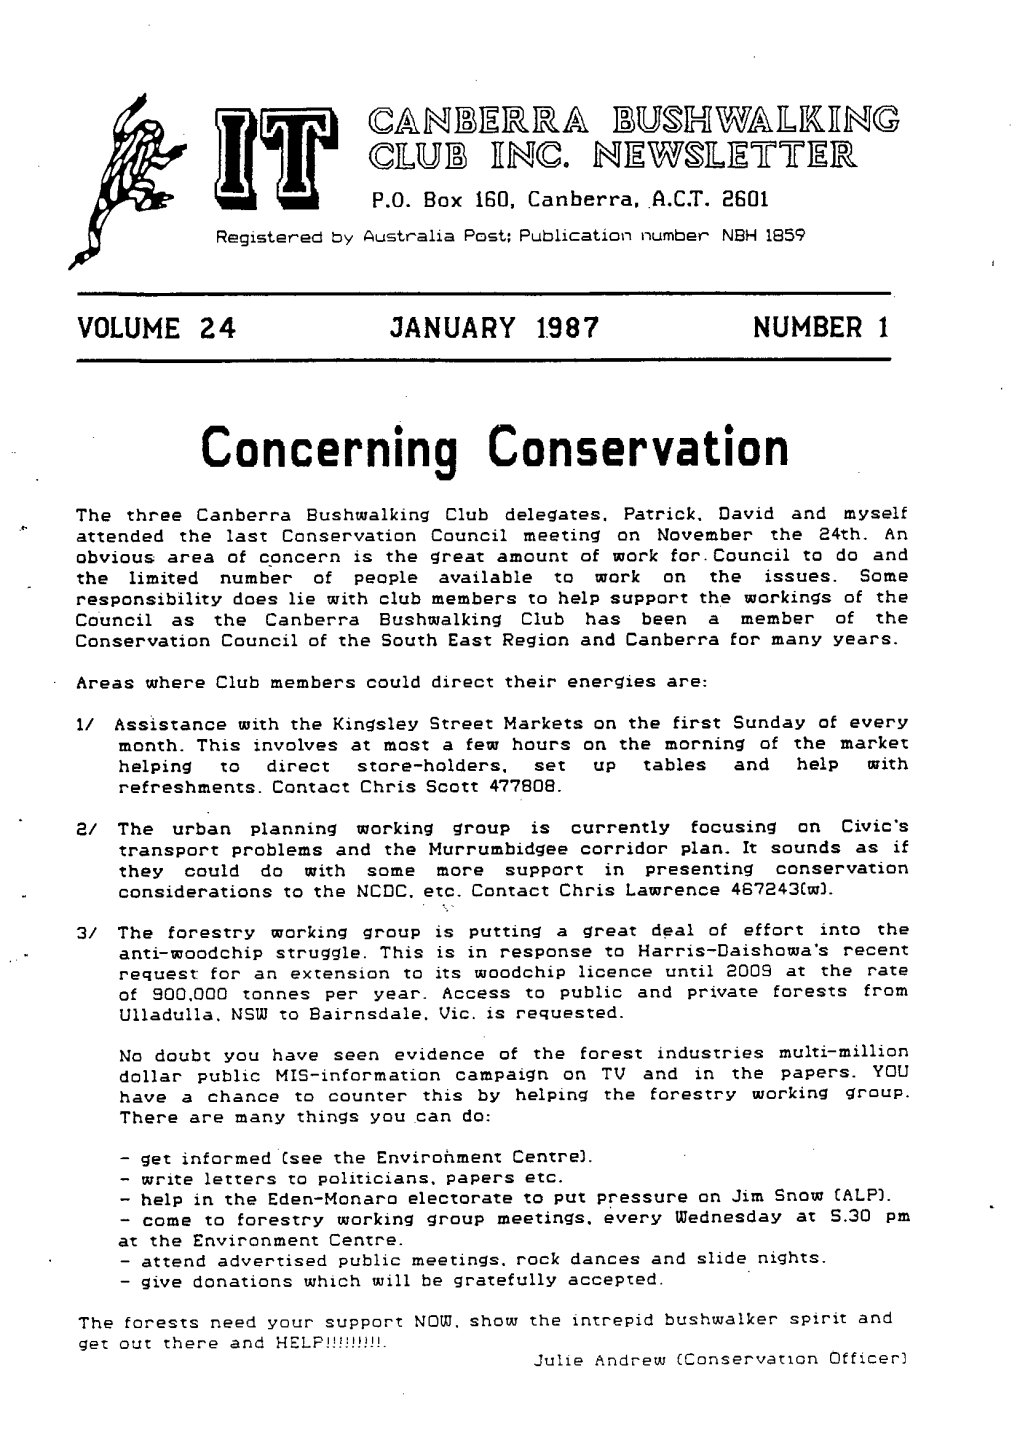 Concerning Conservation